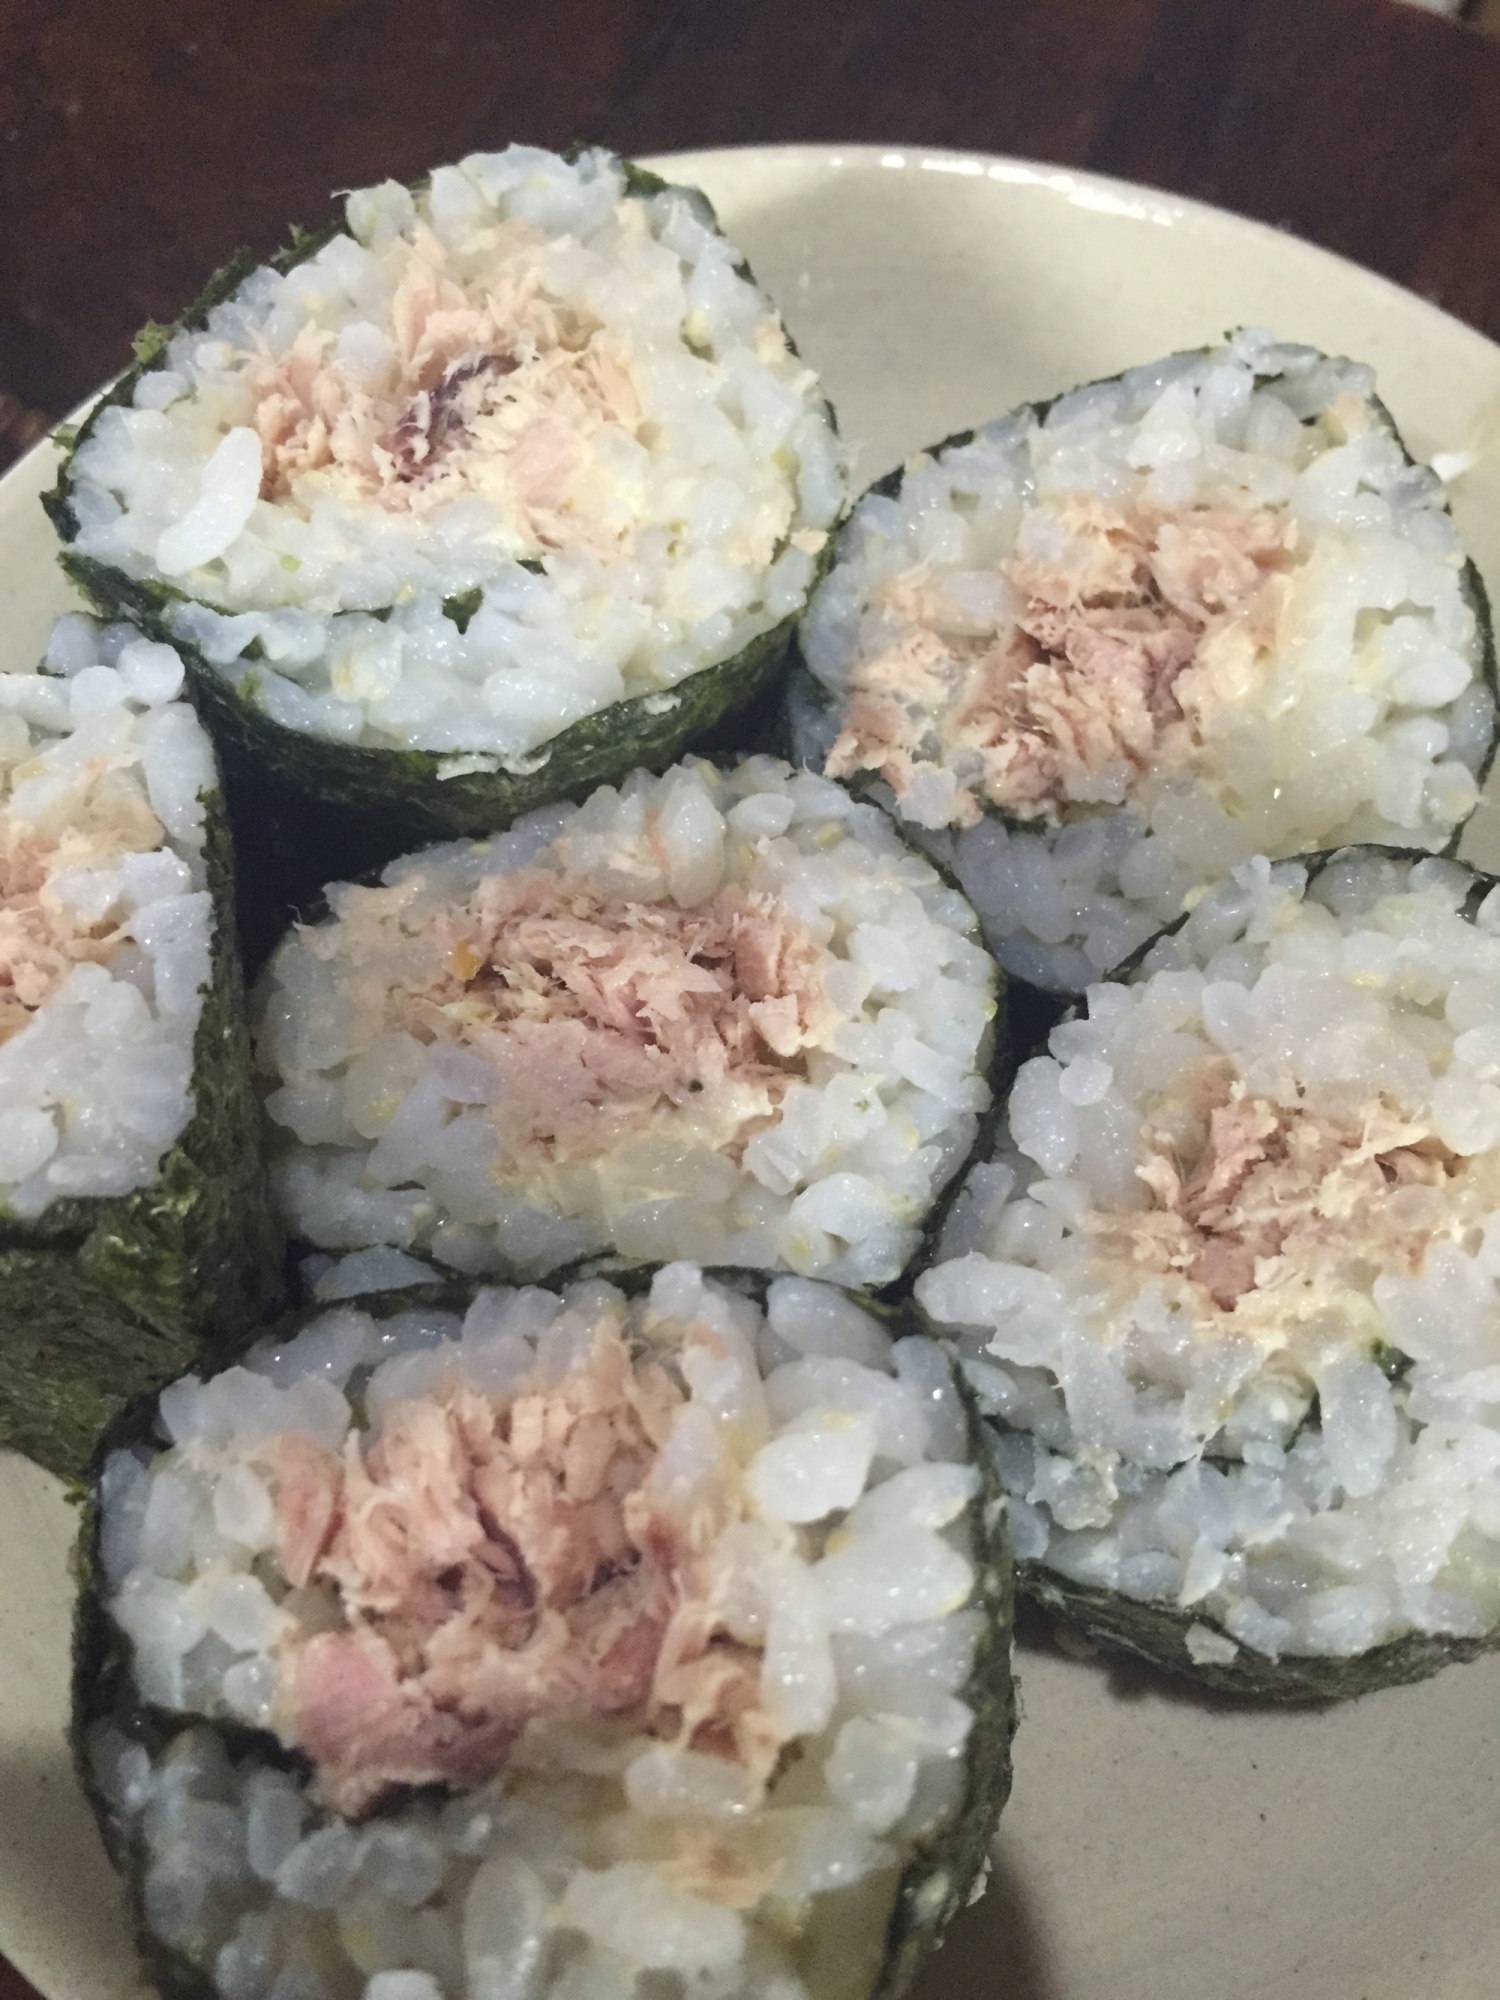 ツナマヨ巻き寿司 1本分